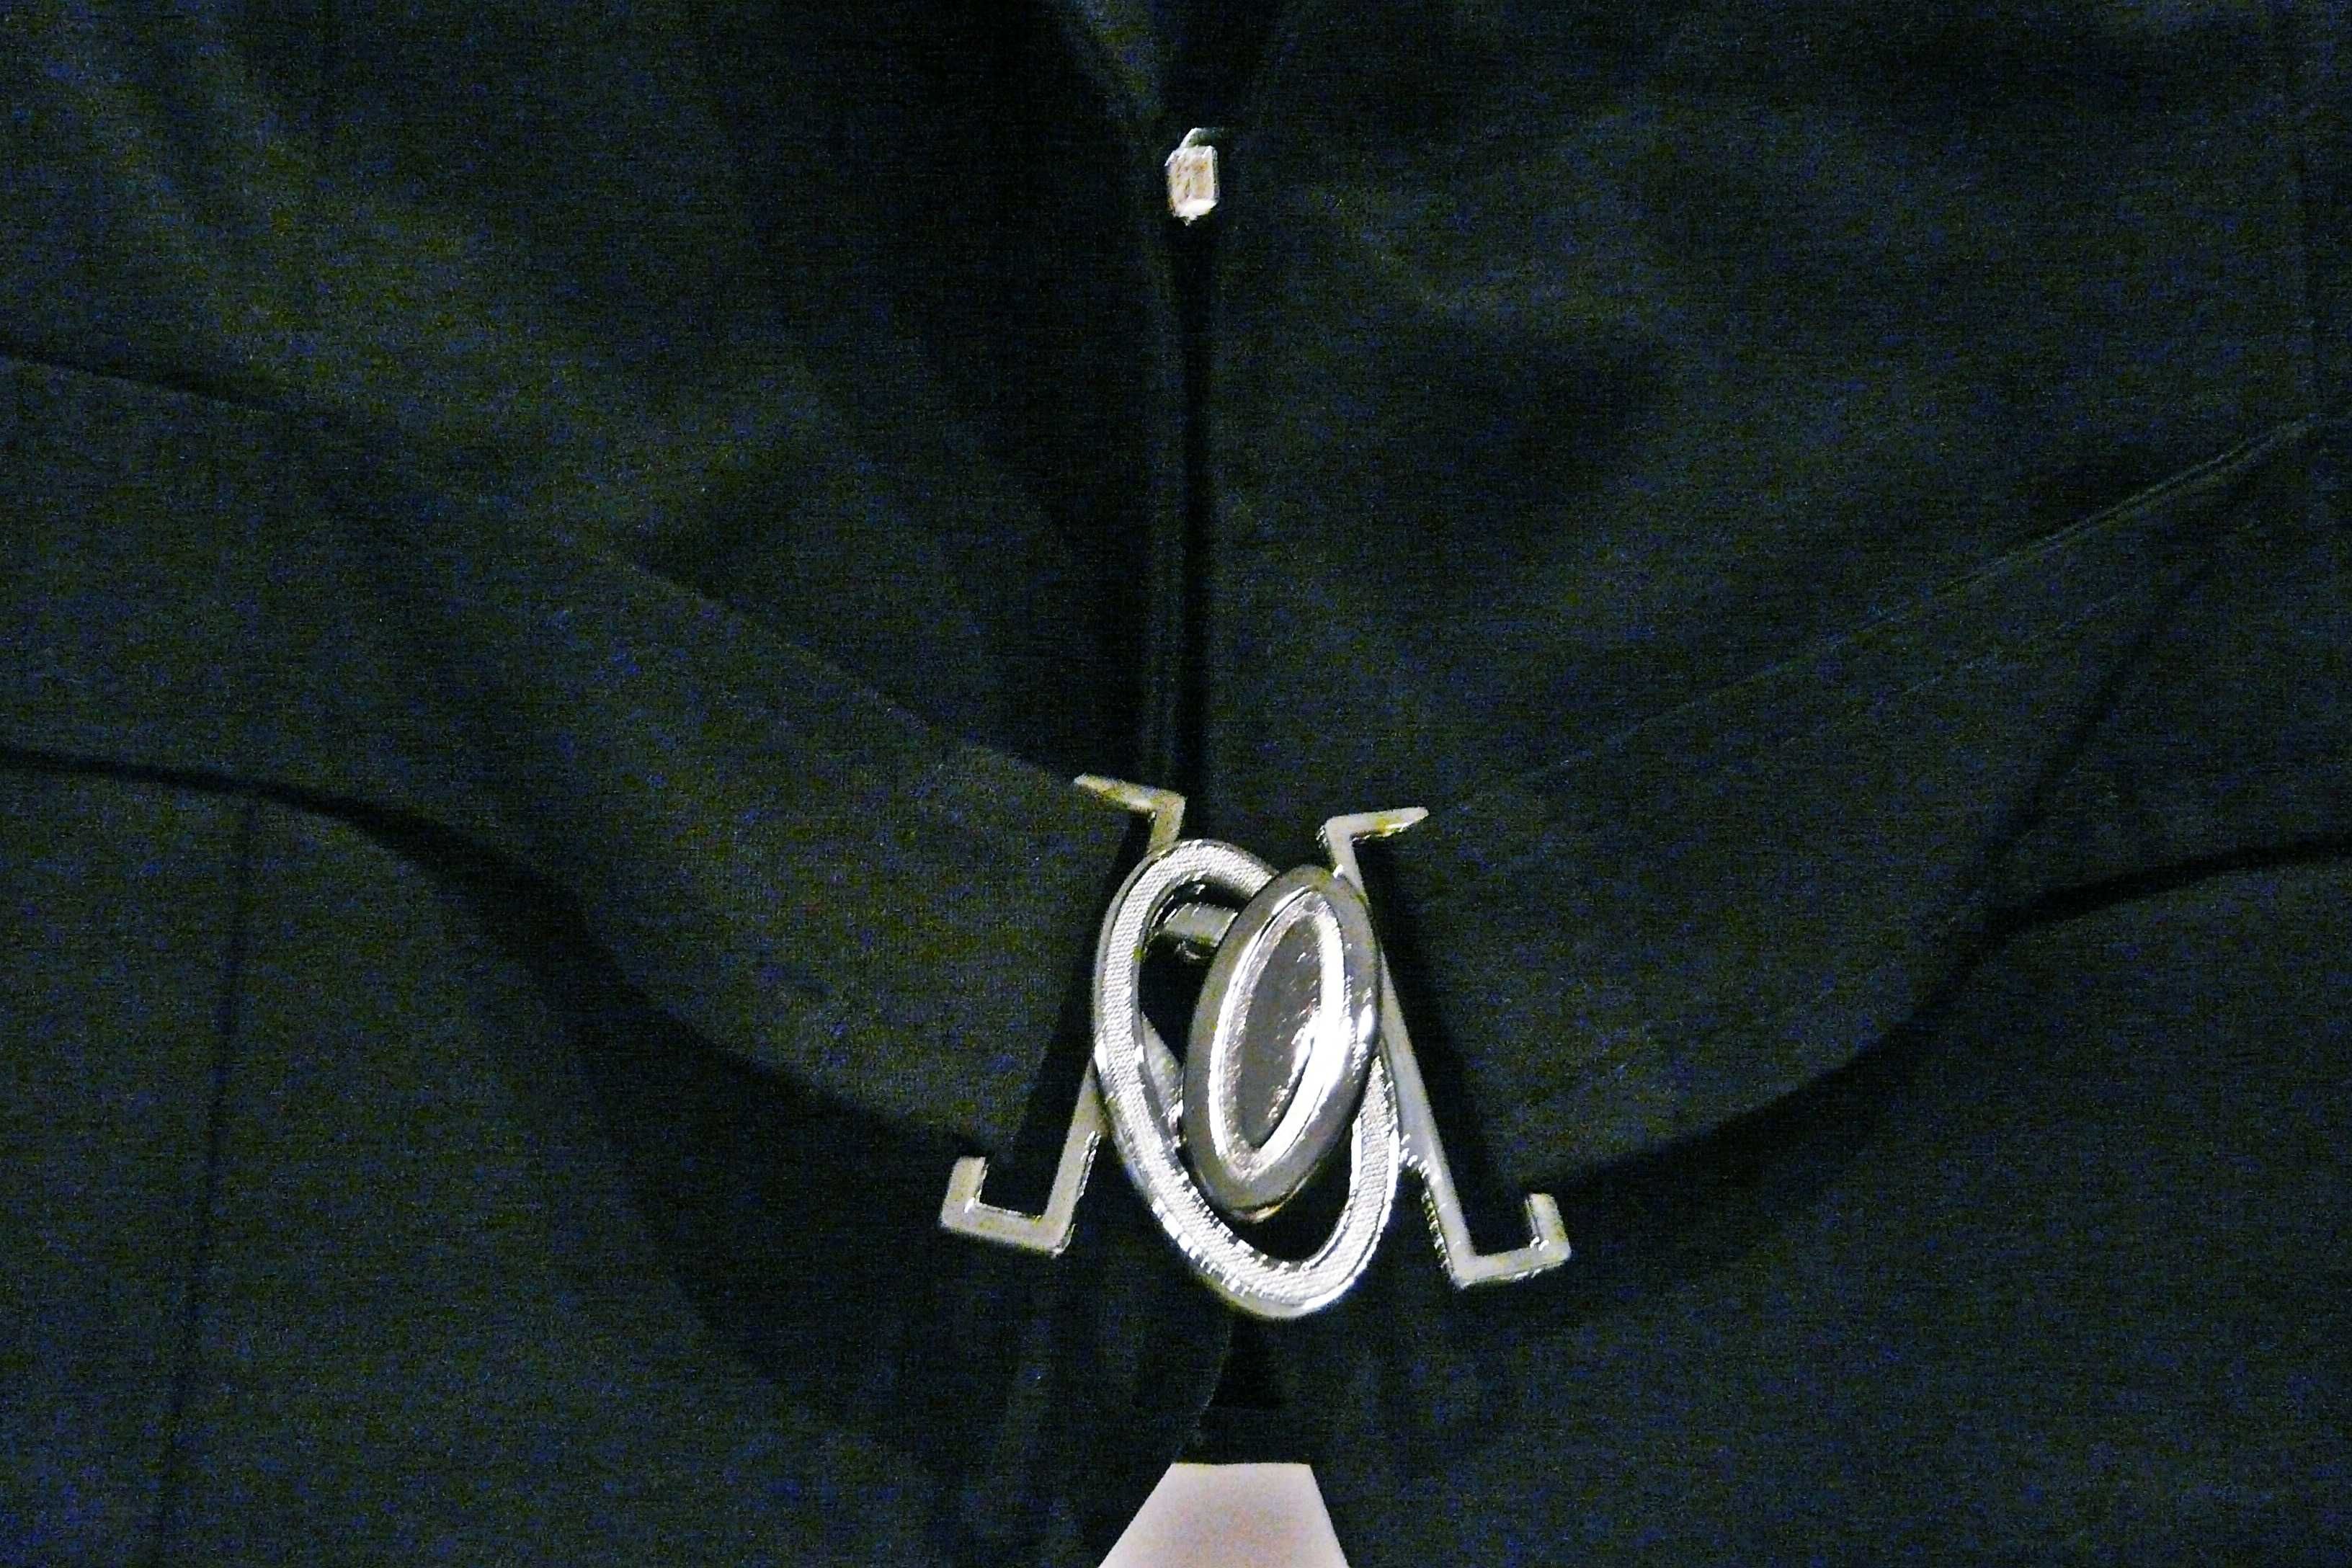 Marynarka wizytowa French Fashion, atłasowa, czarna, r. 46.